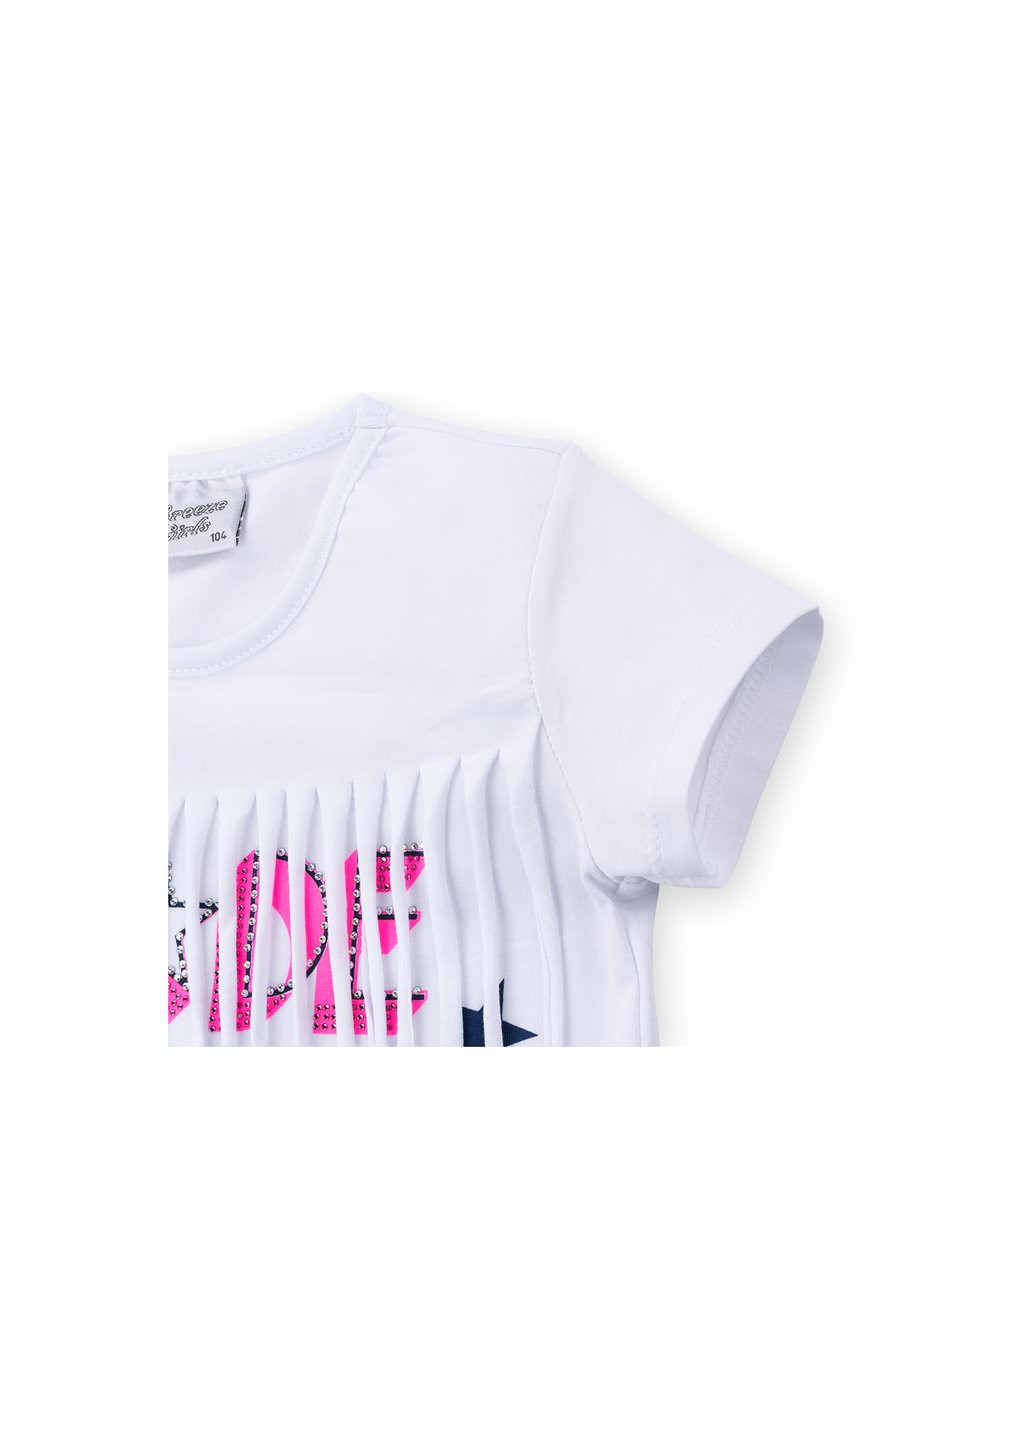 Комбинированный летний набор детской одежды футболка со звездочками с шортами (9036-98g-white) Breeze